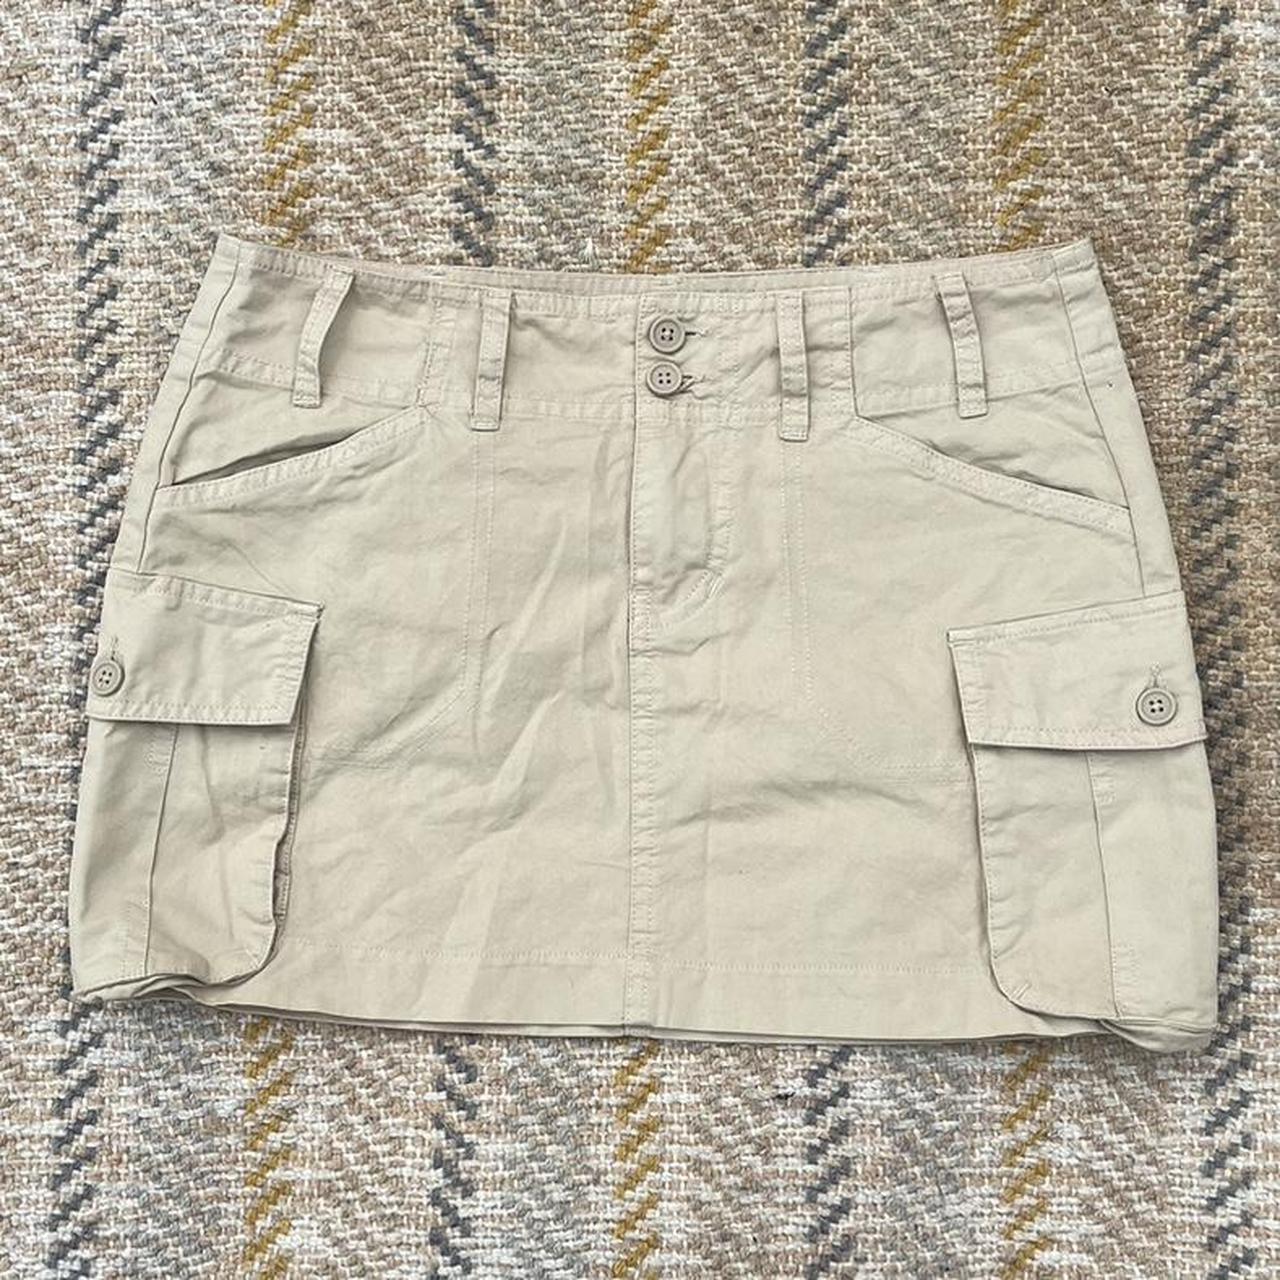 Brandy Melville Women's Skirt | Depop